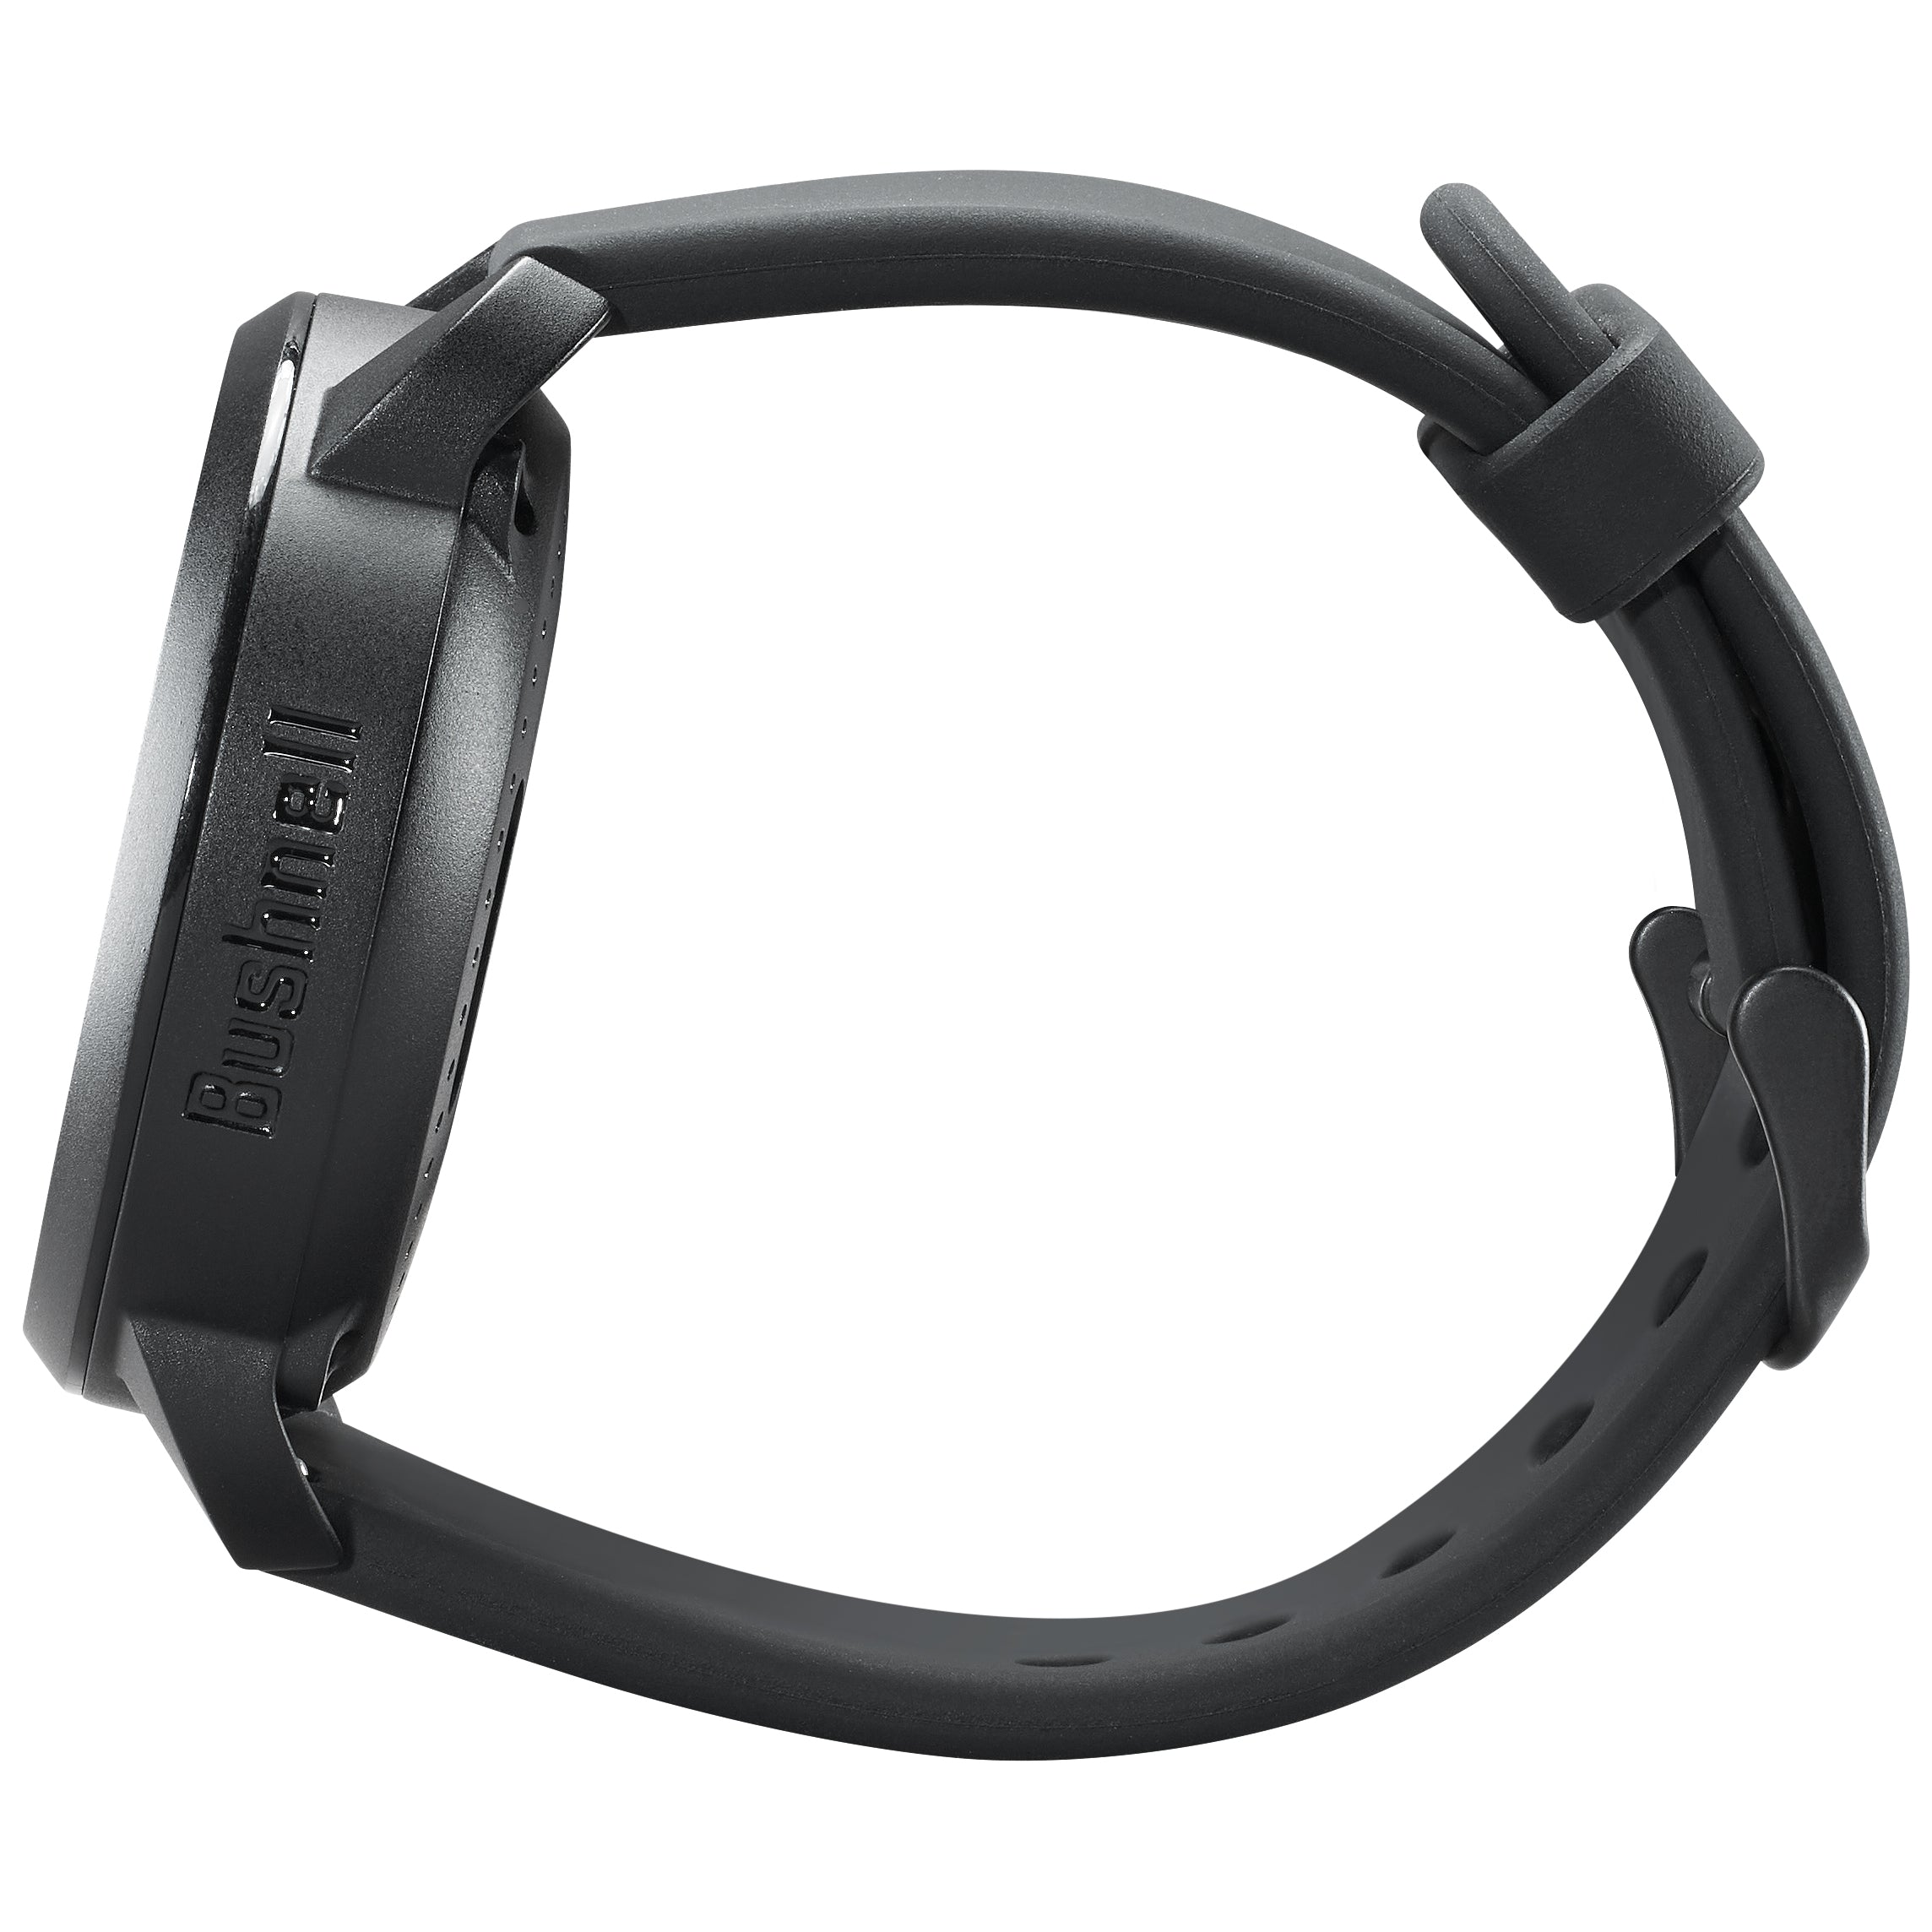 Black ‘Ion Edge’ GPS Rangefinder watch